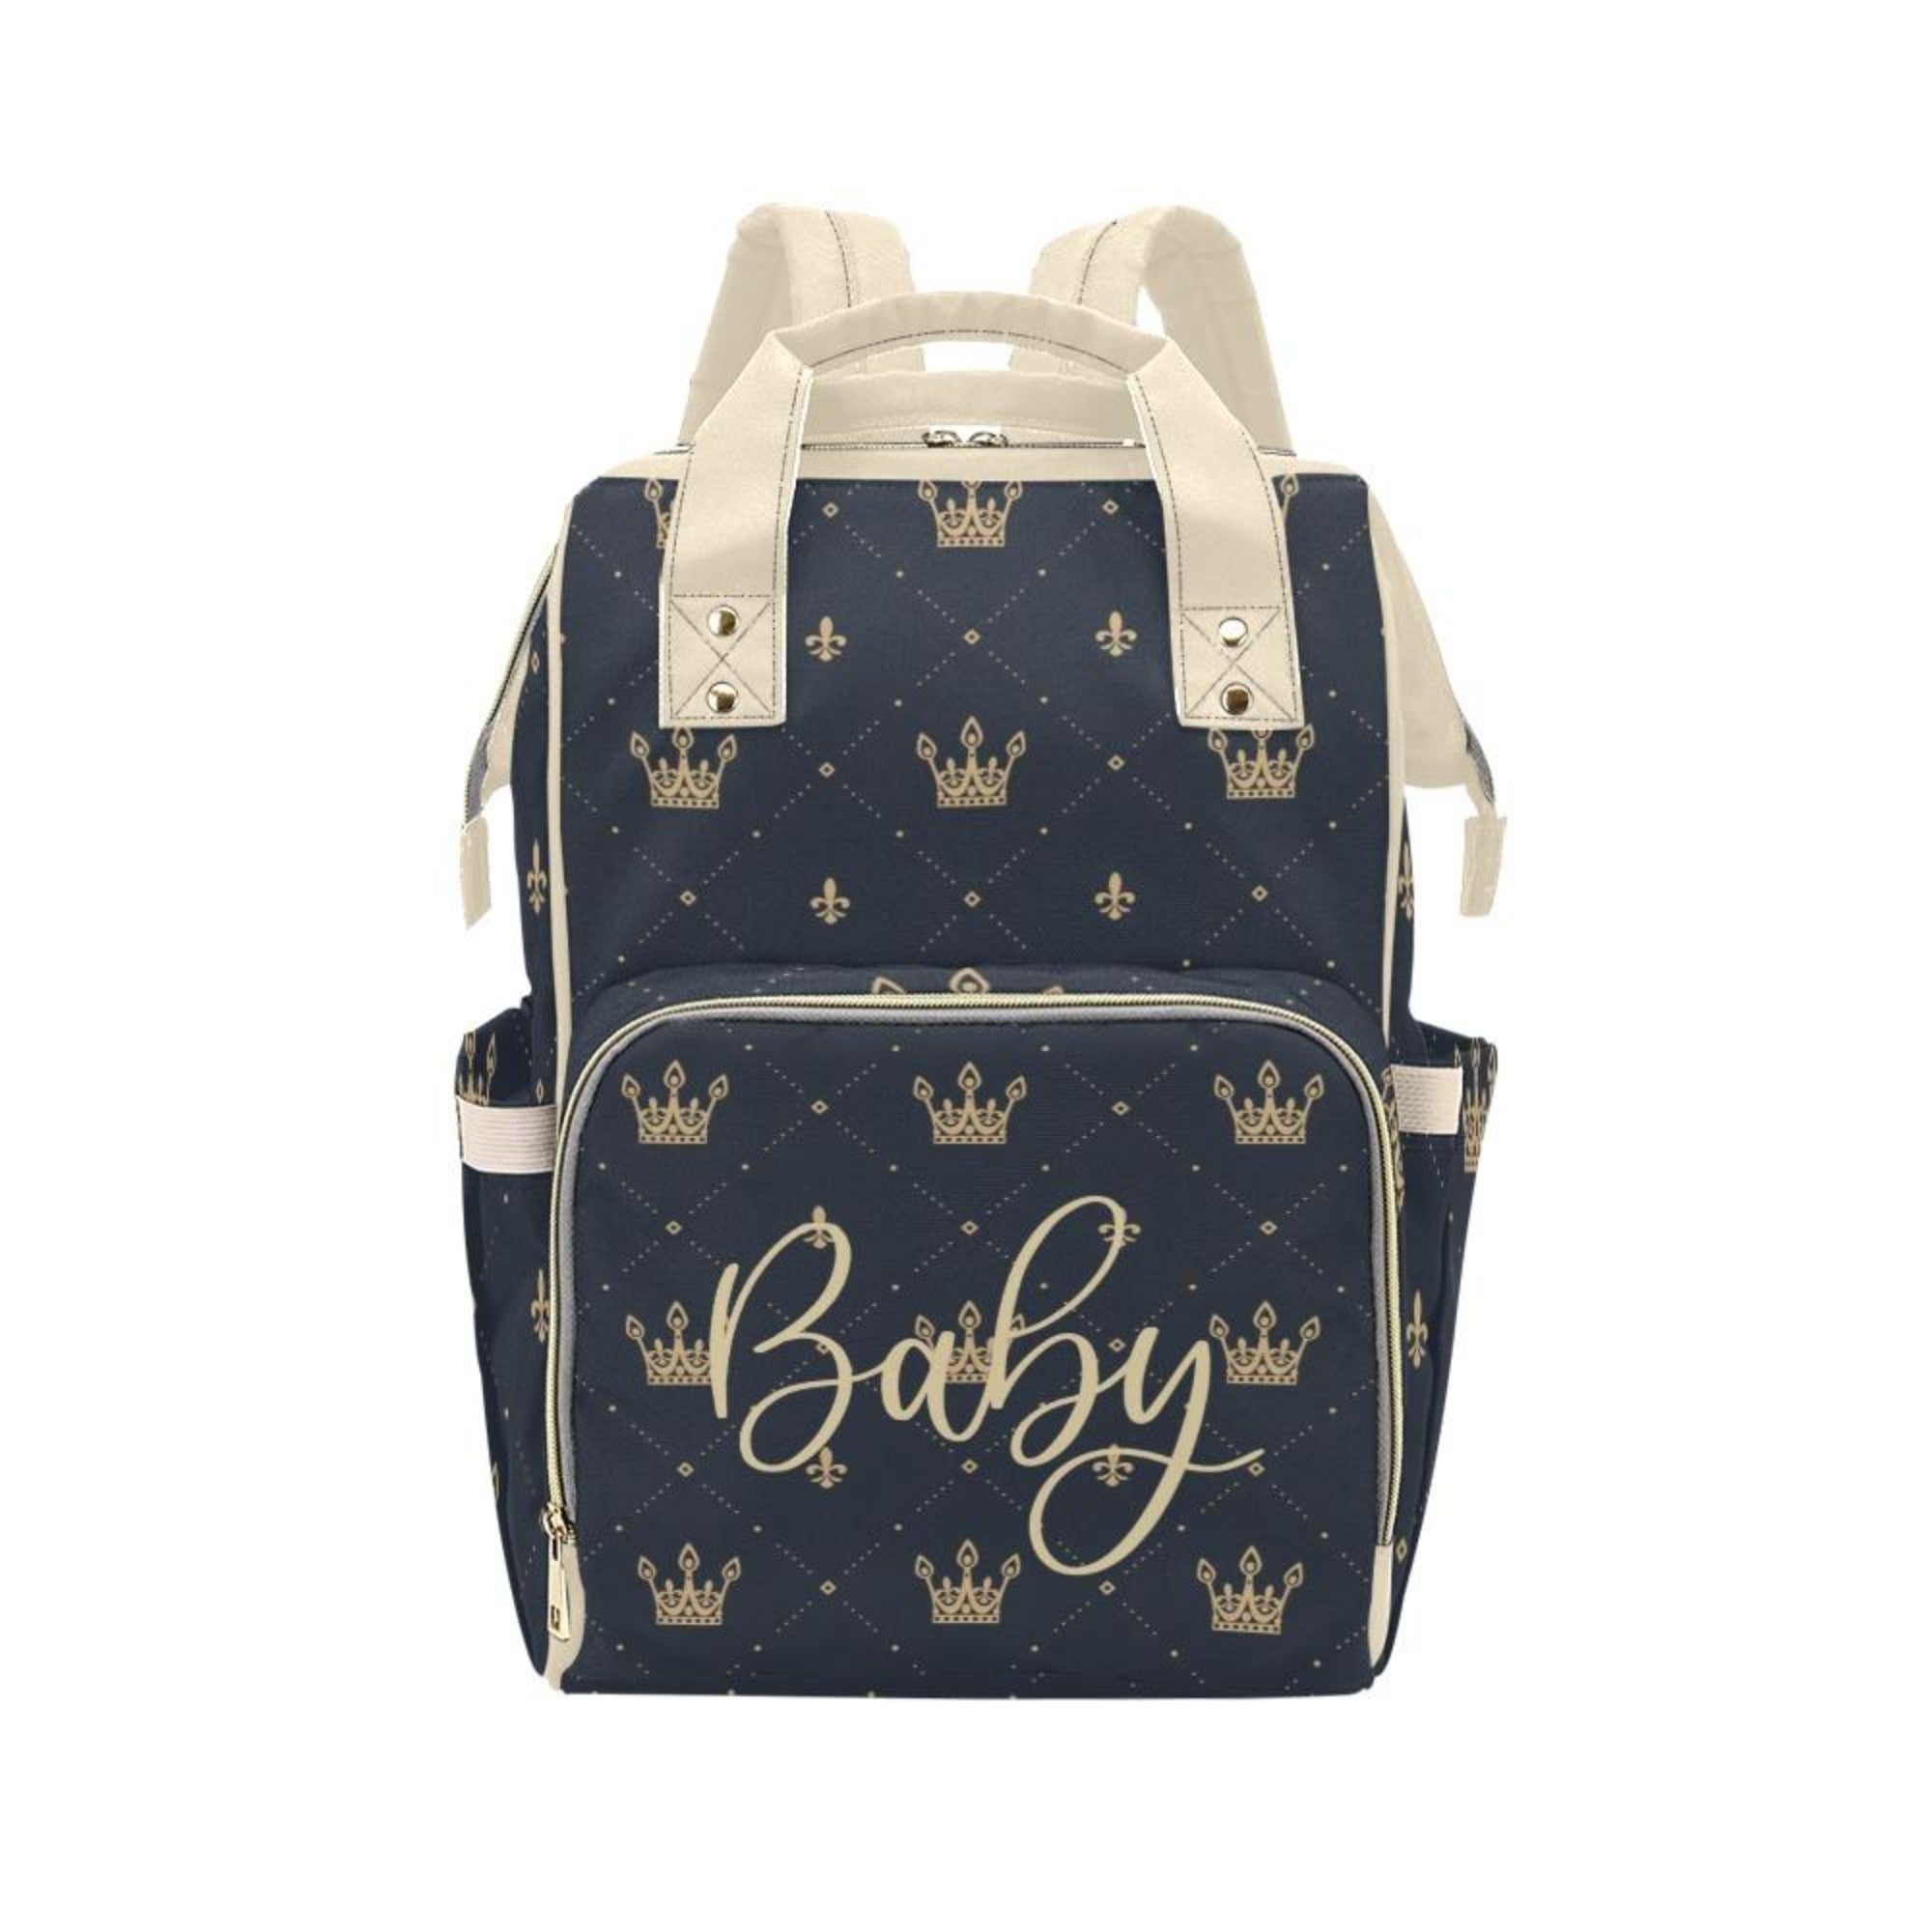 Designer Diaper Bags - Regal Boys Gold Crowns On Black - Waterproof Multi-Function Backpack